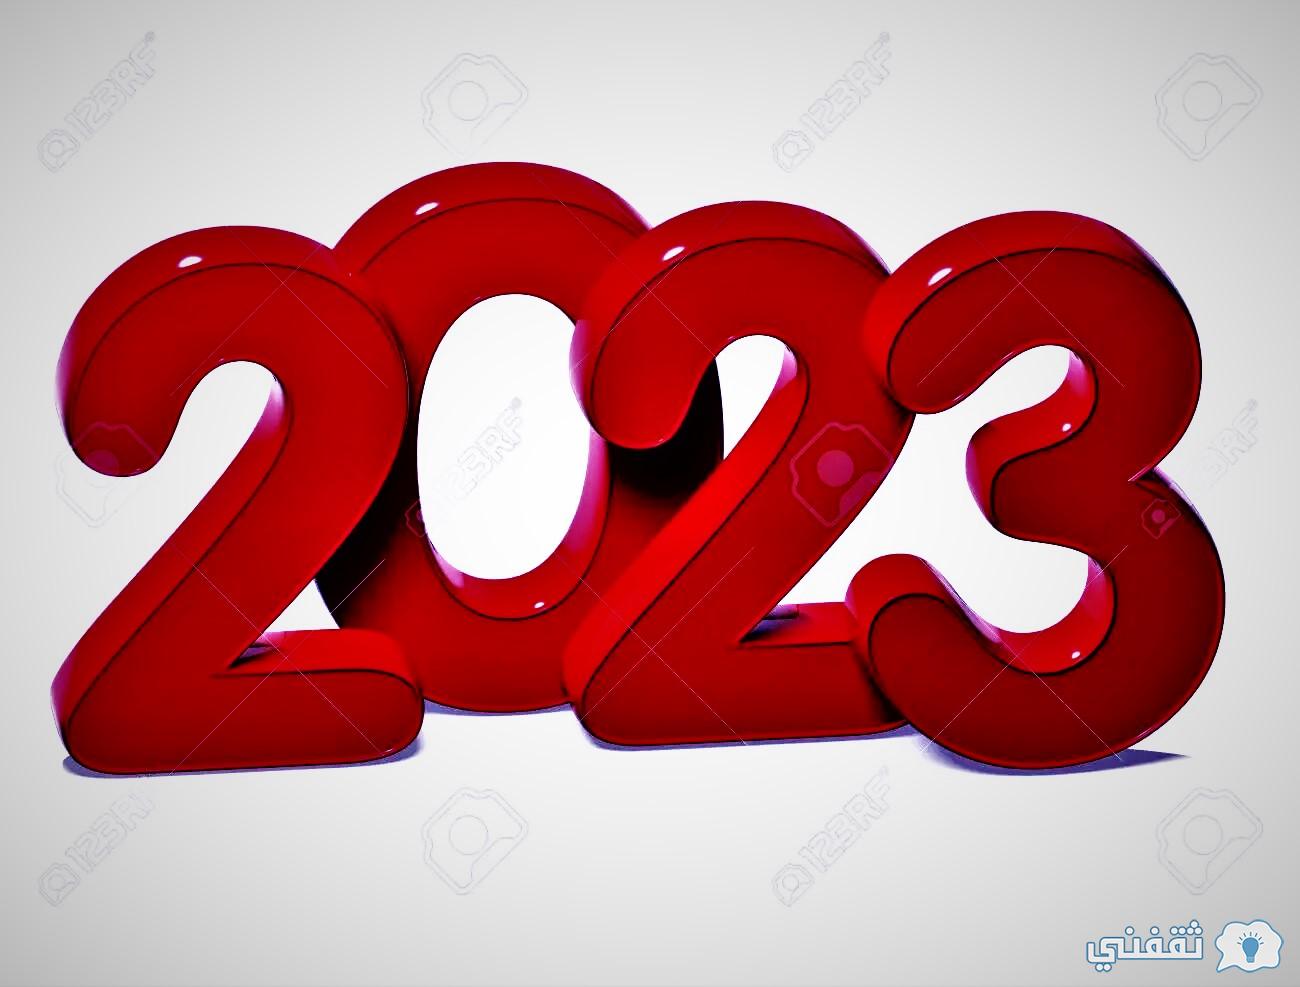 العد التنازلي لرأس السنة الميلادية 2023